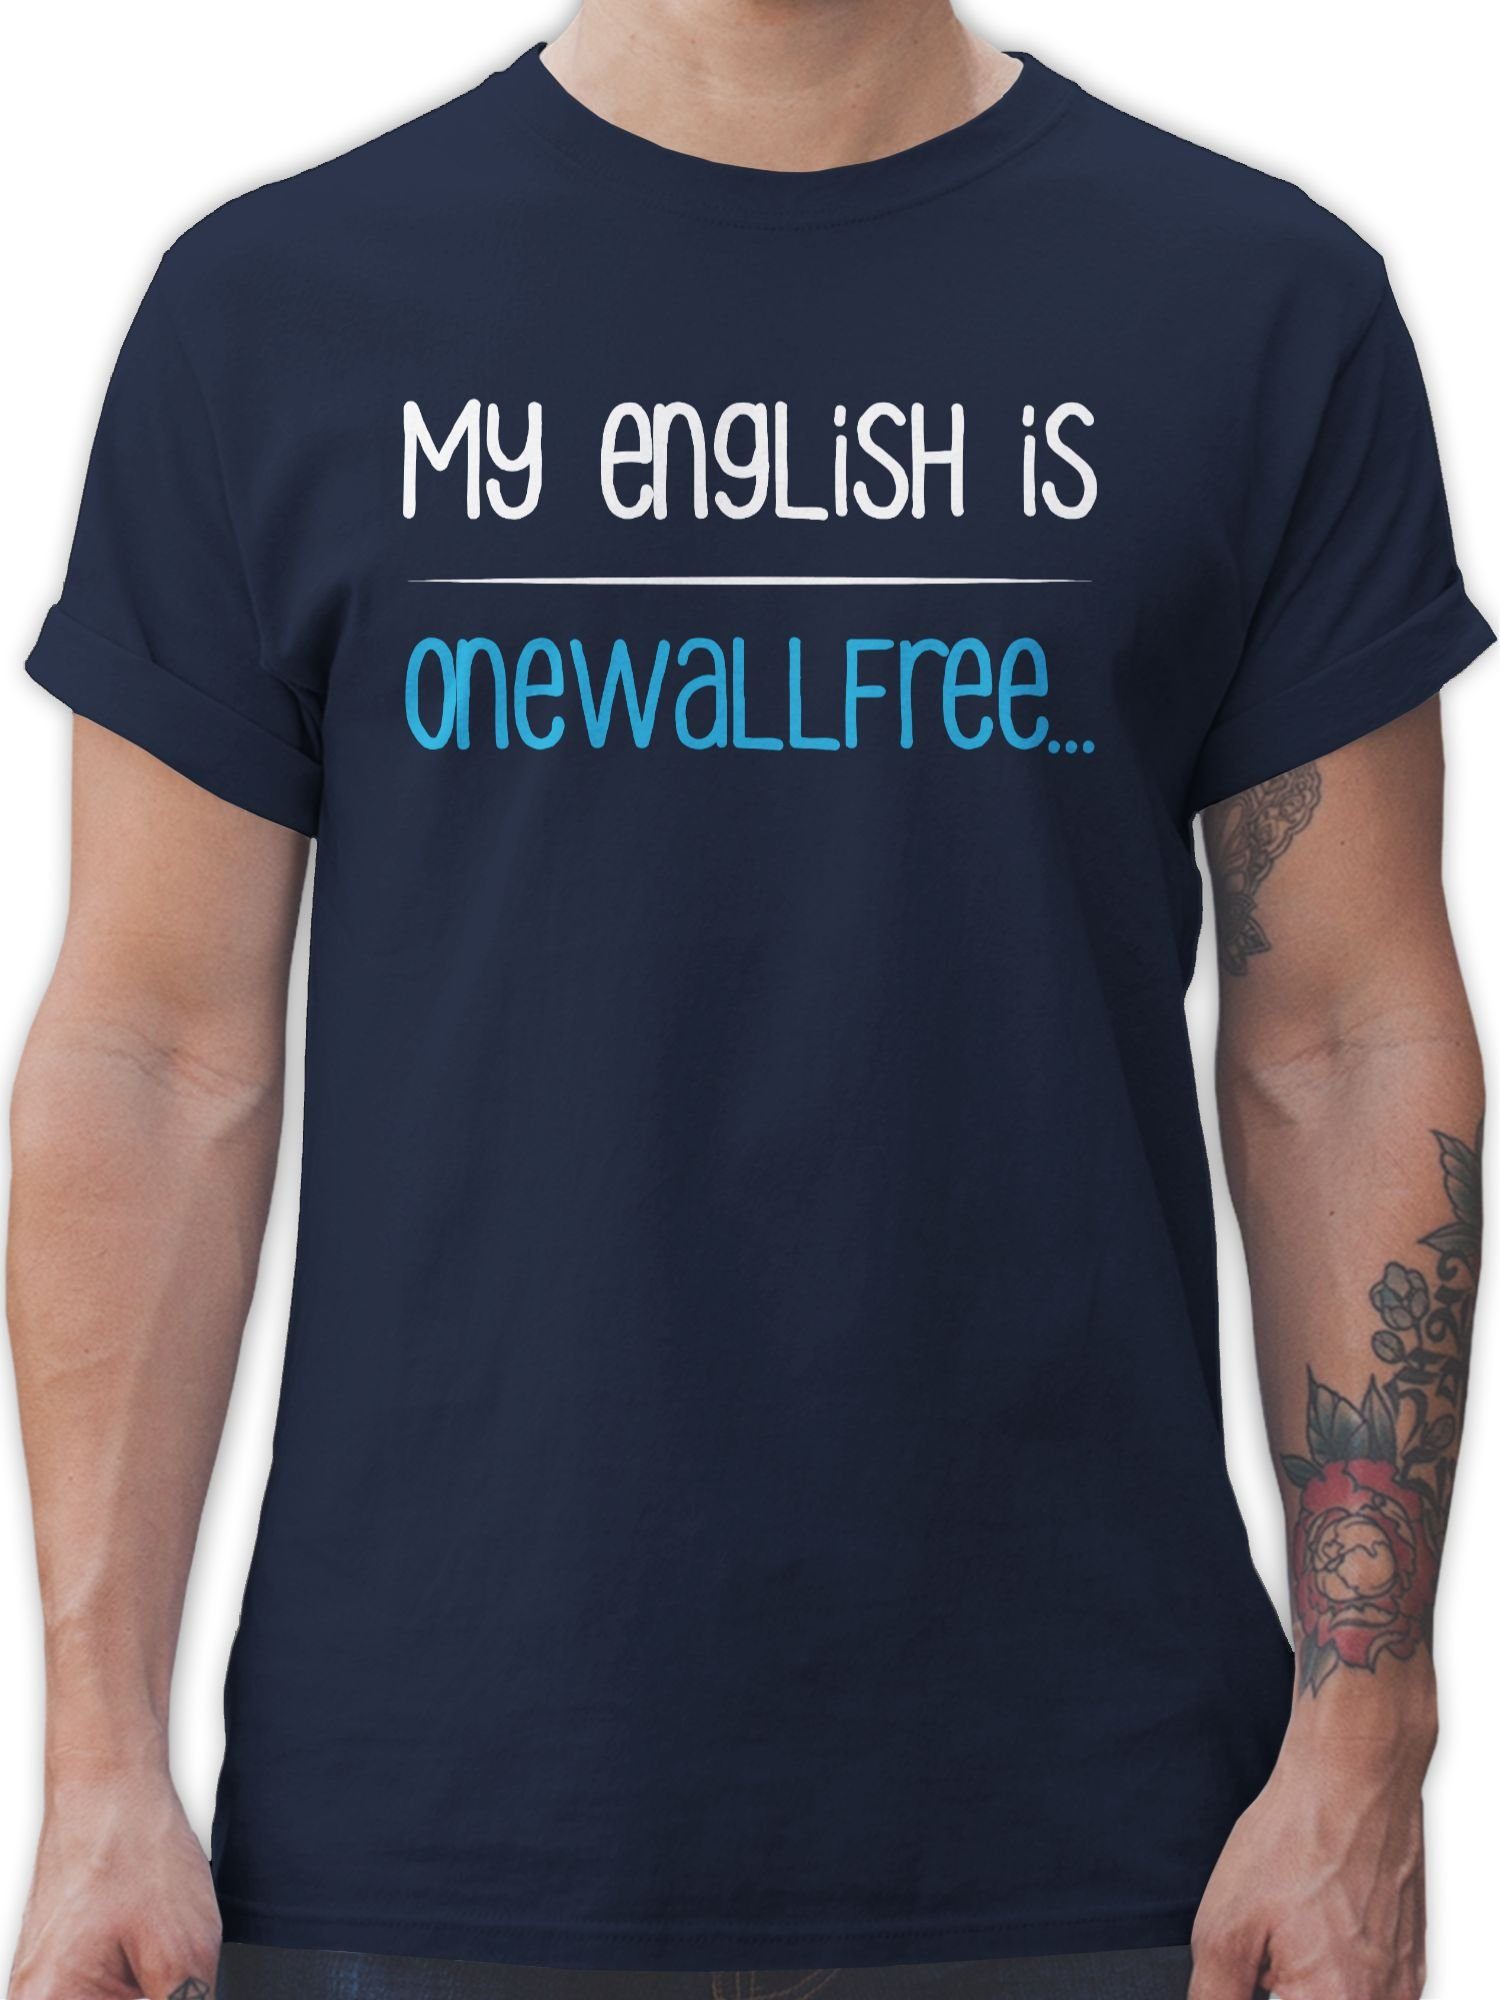 Shirtracer T-Shirt My english is onewallfree - Denglisch Sprüche Statement mit Spruch 01 Navy Blau